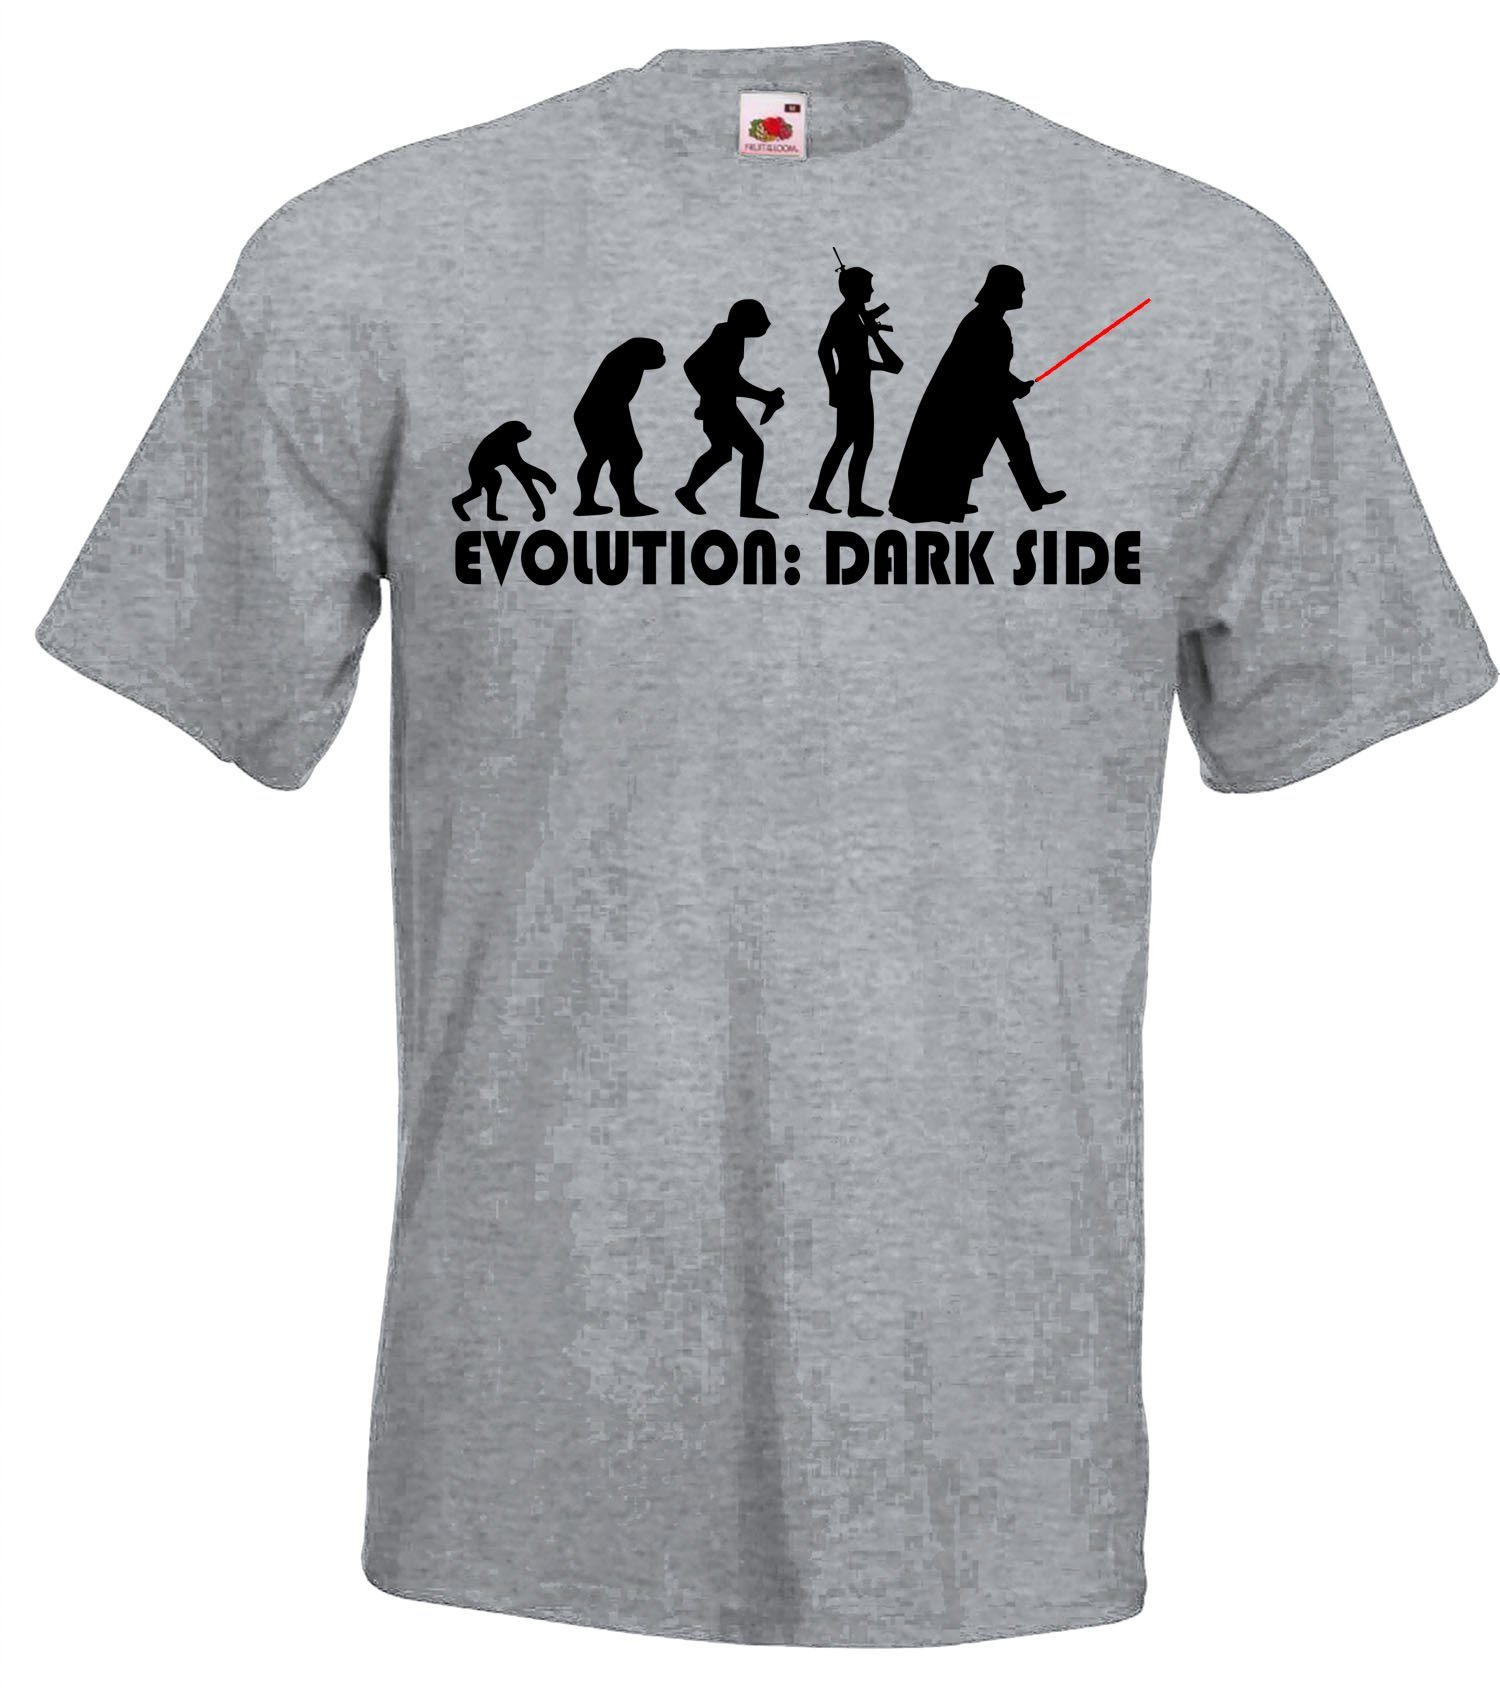 Youth Side Herren T-Shirt Dark Grau Fun T-Shirt Designz Evolution